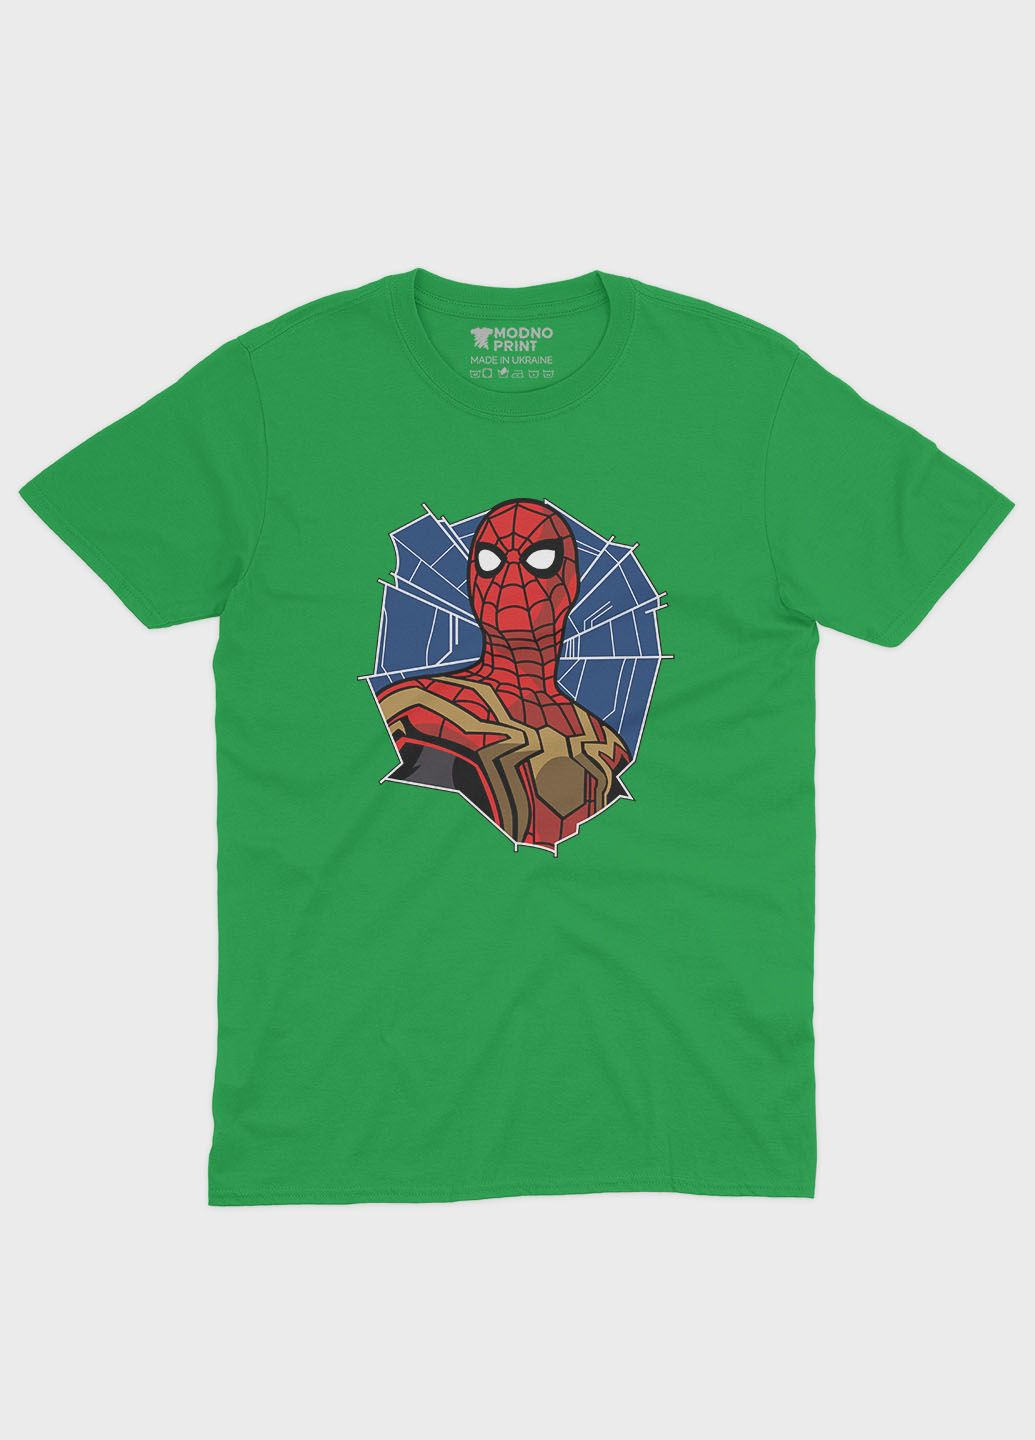 Зеленая демисезонная футболка для девочки с принтом супергероя - человек-паук (ts001-1-keg-006-014-092-g) Modno